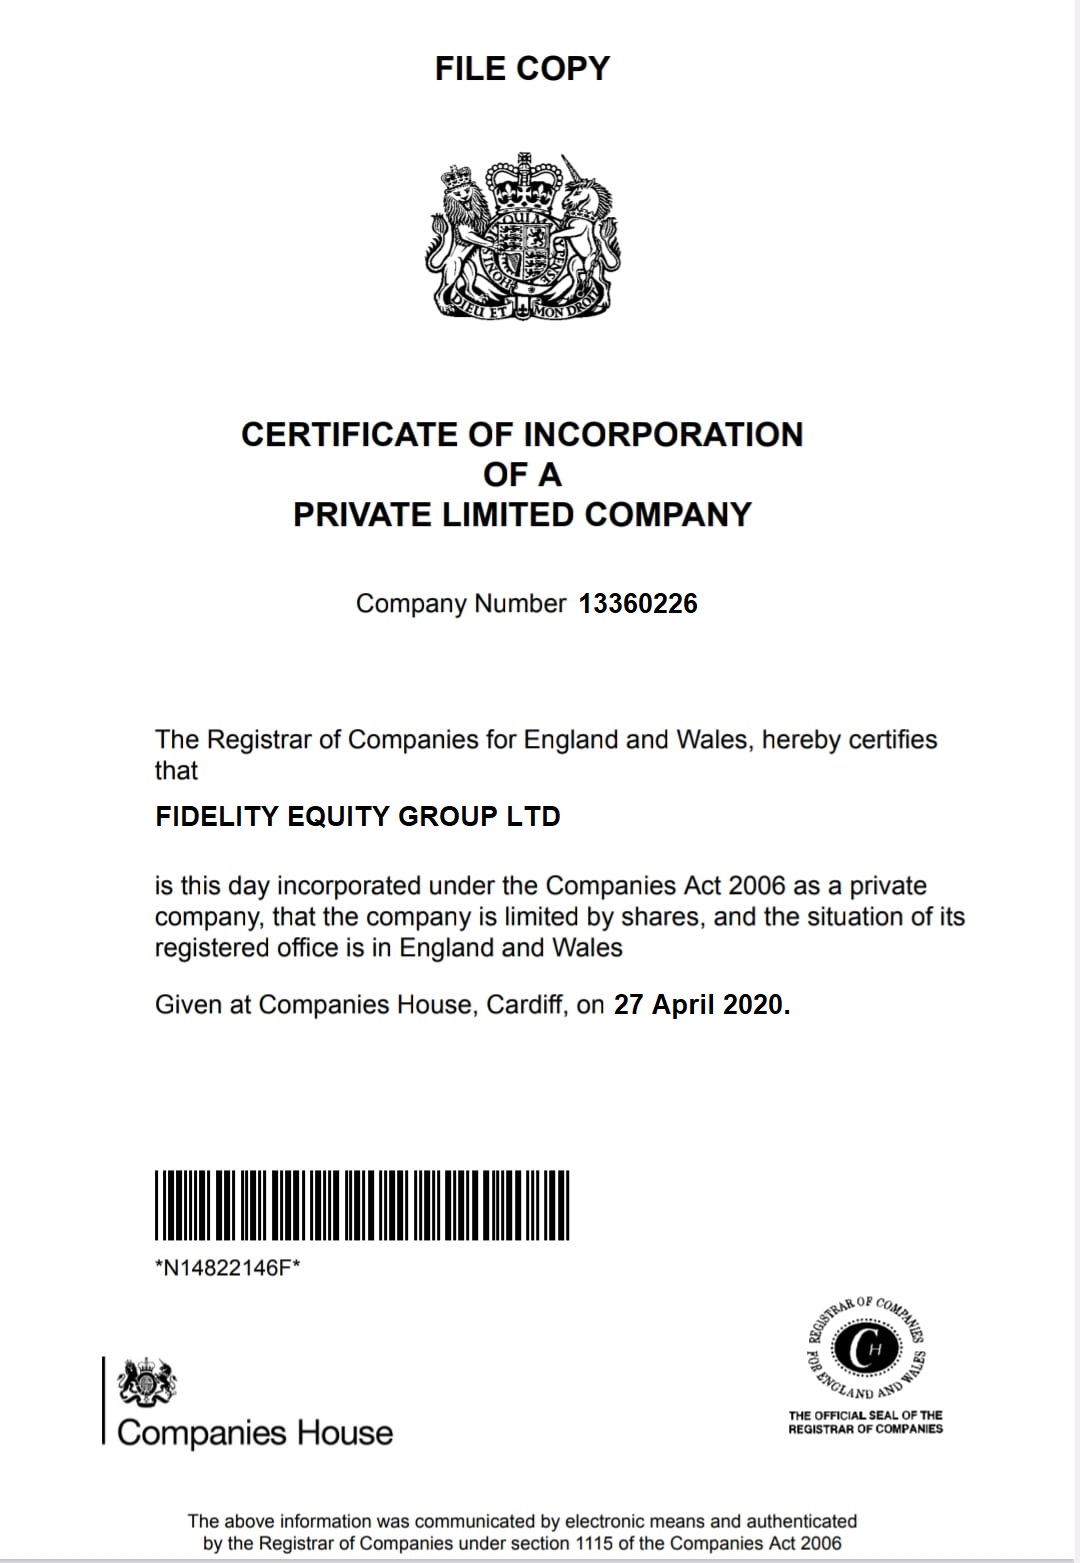 fidel-equity.ltd  certificate